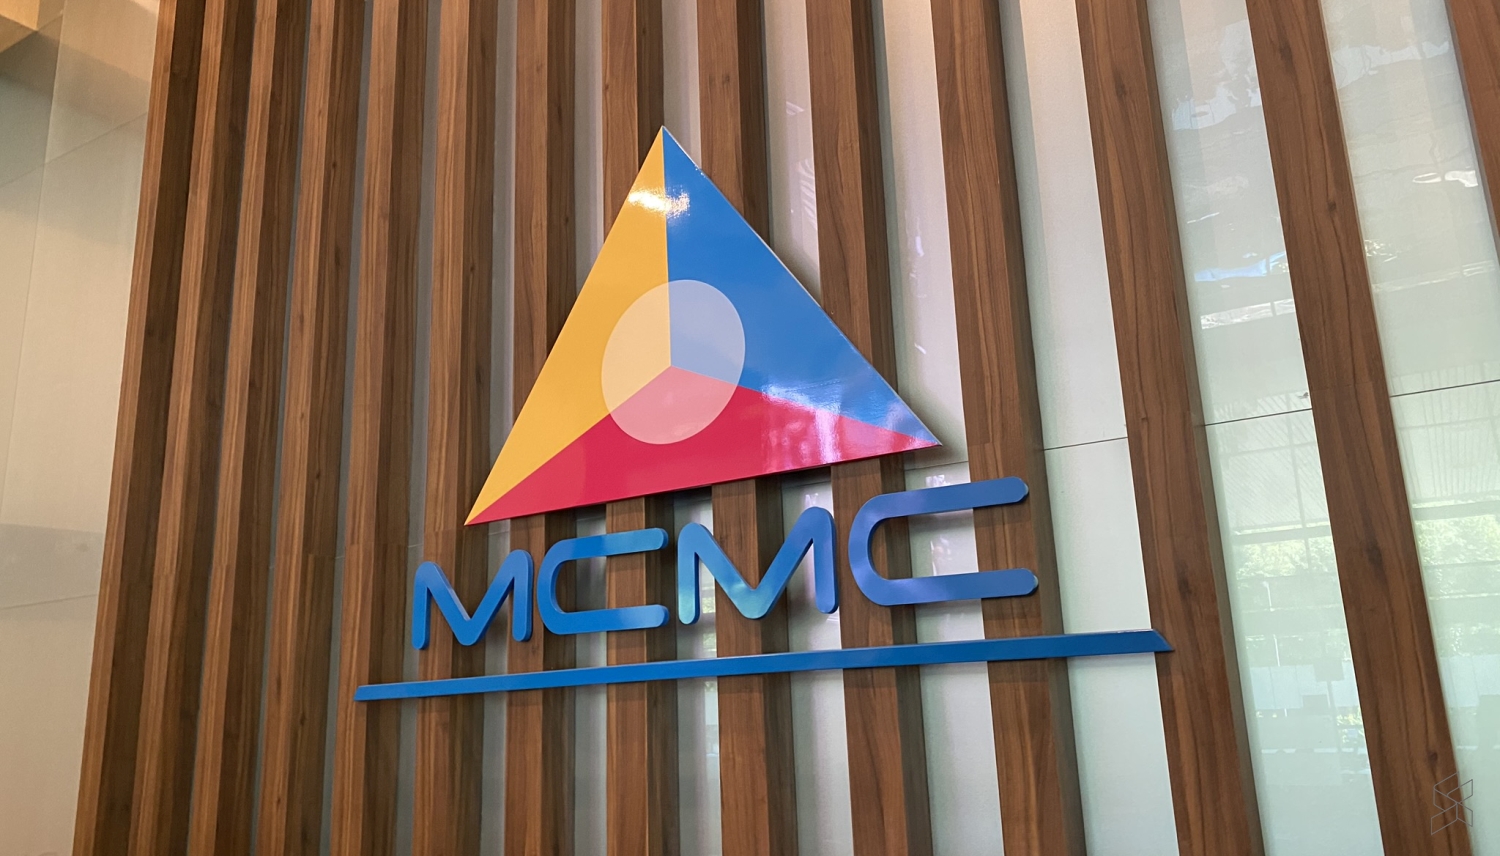 5G Malaysia MCMC